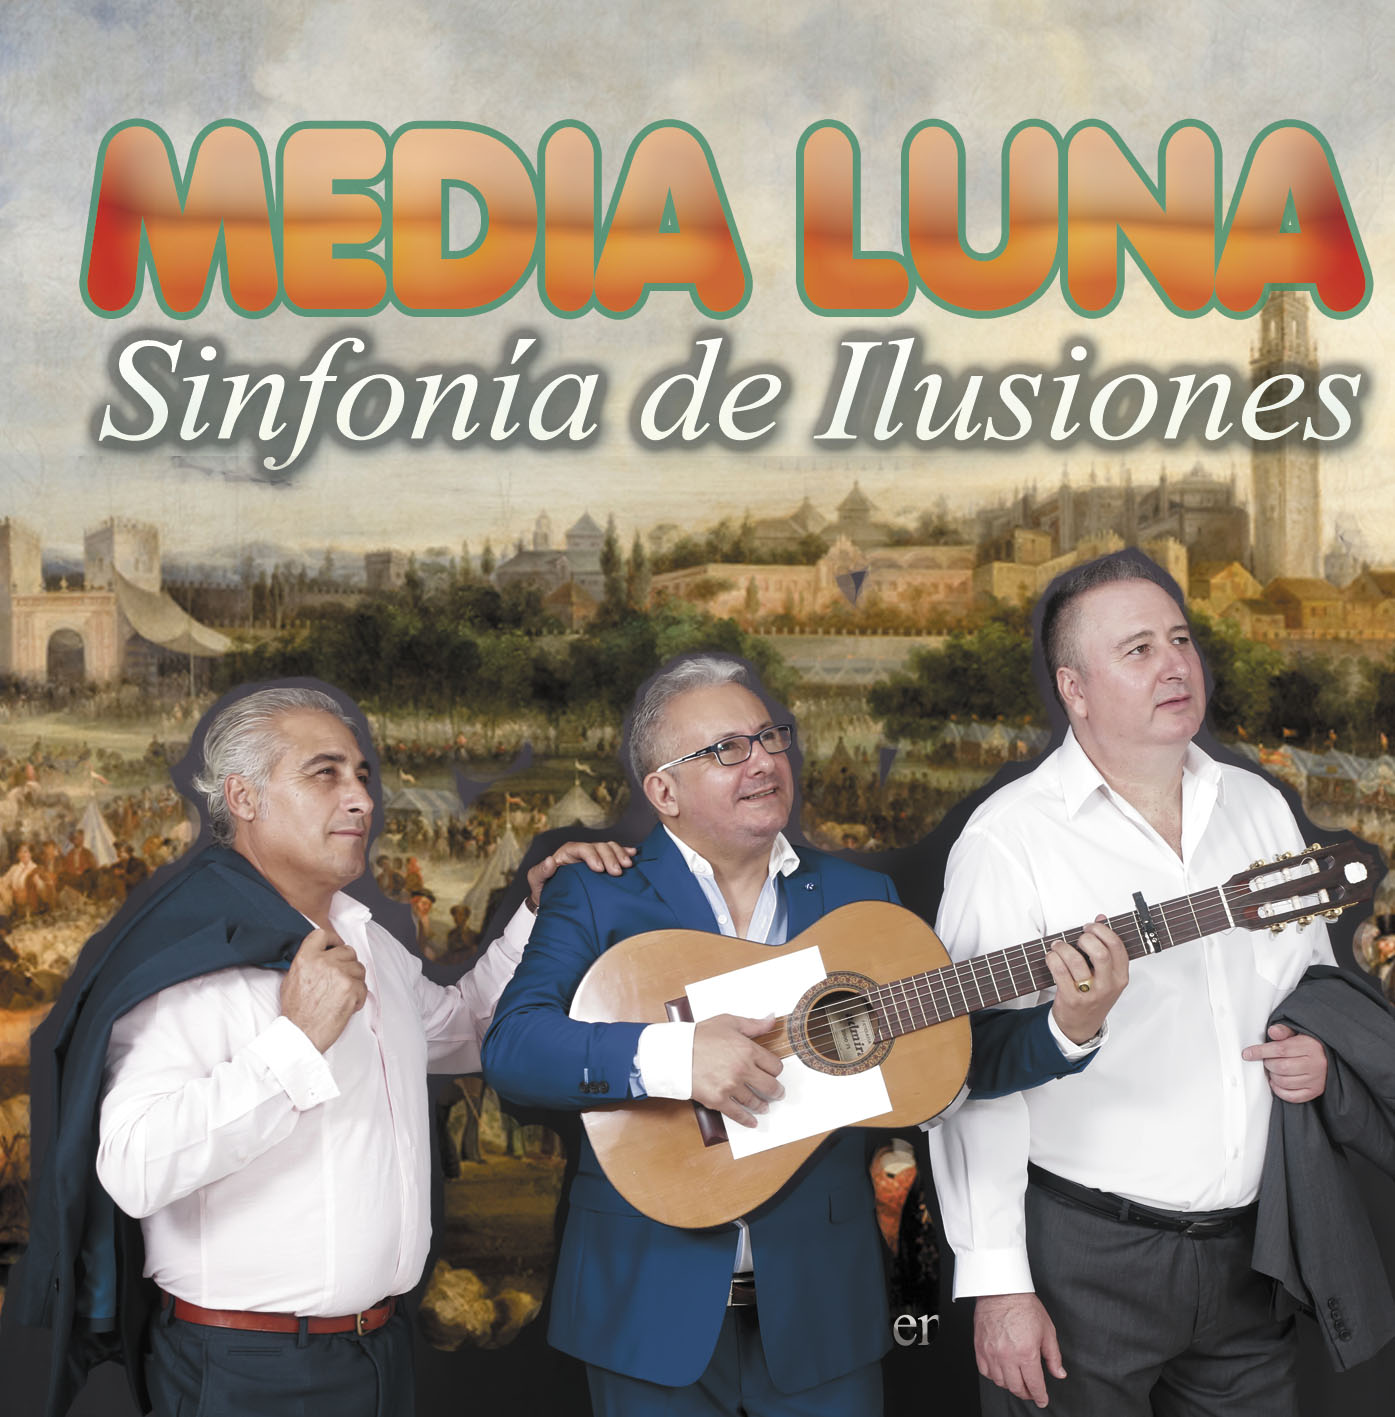 MEDIA LUNA (SINFONIA DE ILUSIONES)